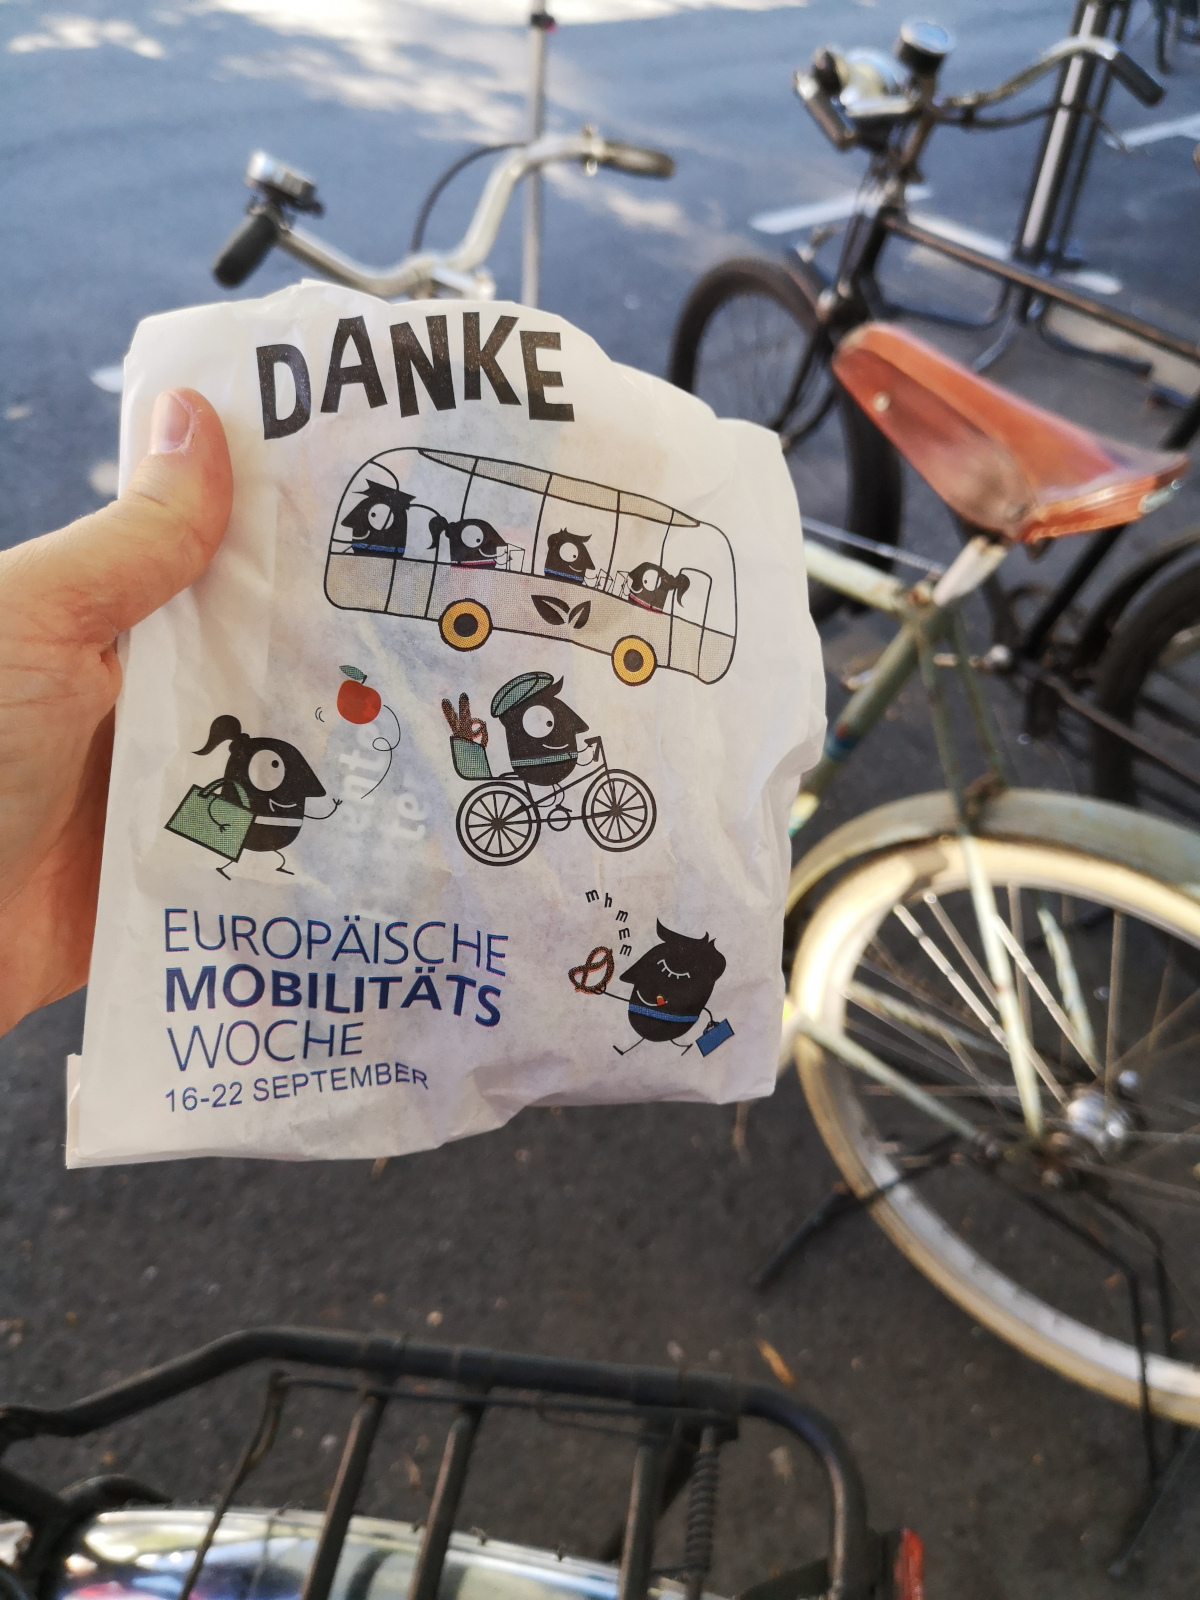 Die Danke-Tüte der Europäischen Woche der Mobilität, gefüllt mit gesunden Snacks. Foto: Kathy Eichholz